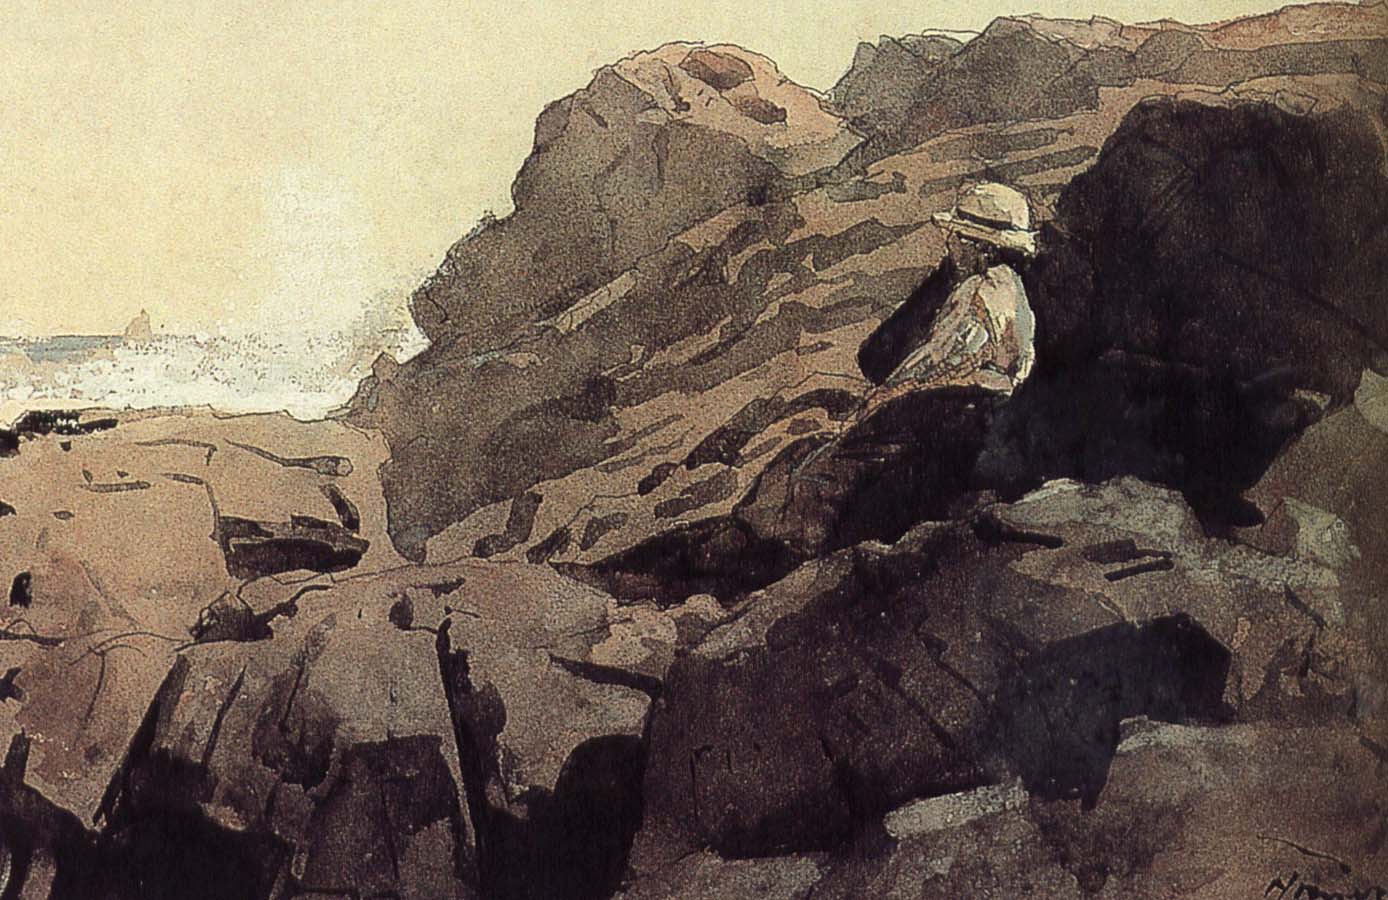 A boy sitting on the rocks